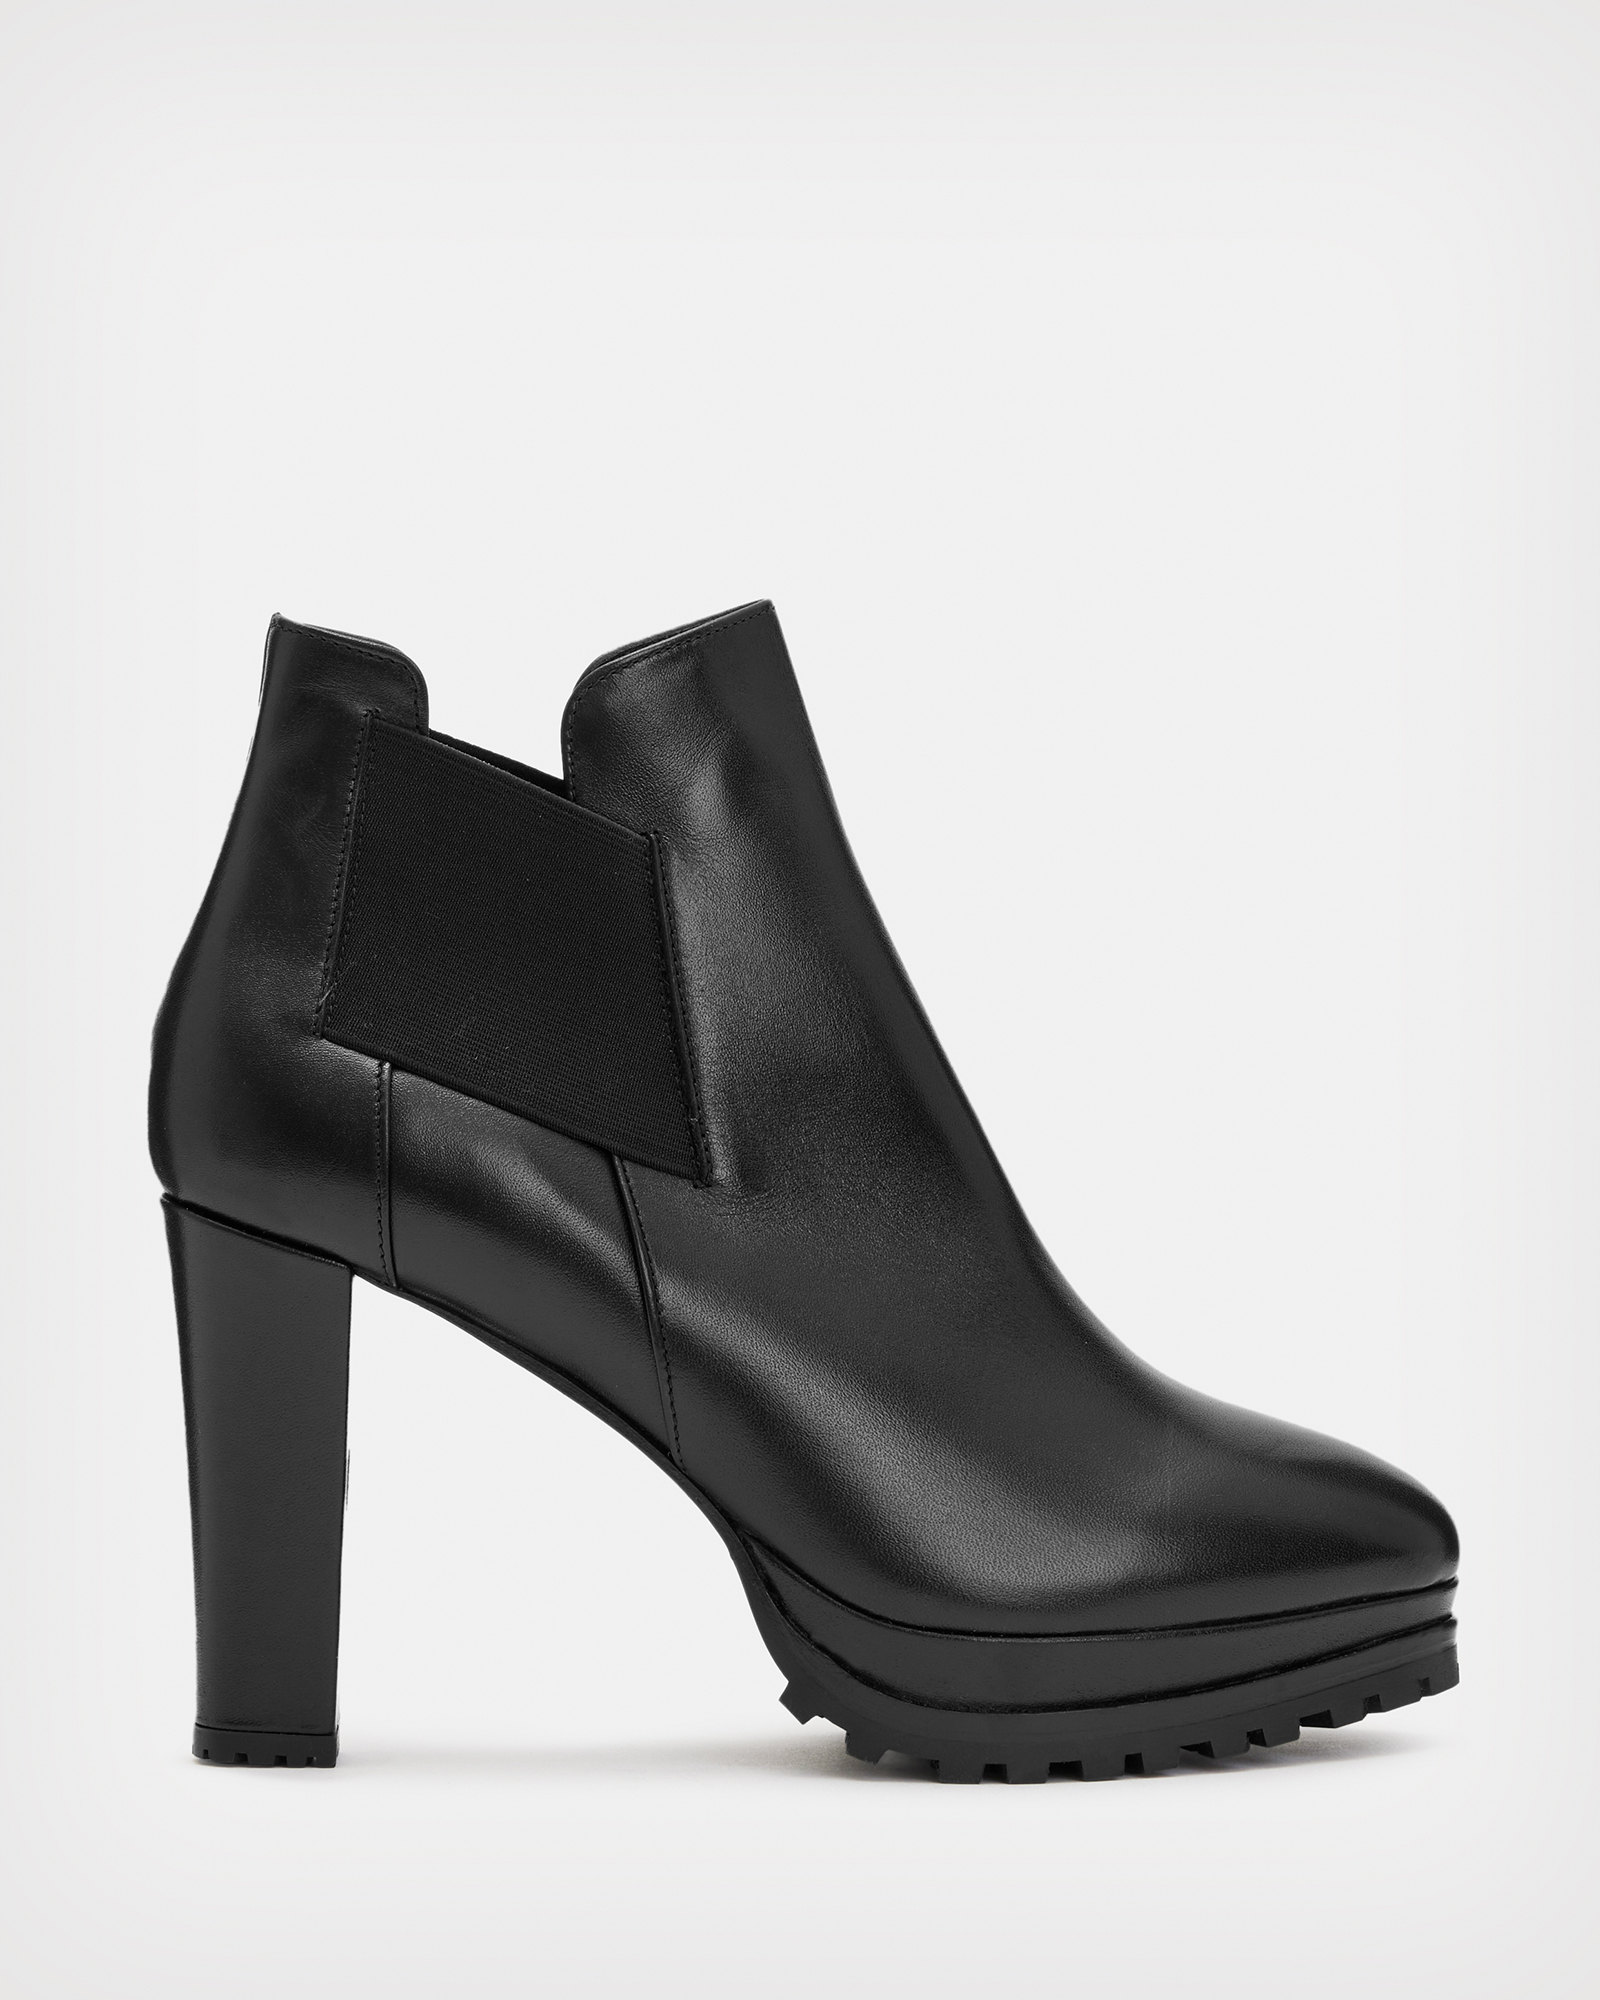 AllSaints Women's Leather Essential Sarris Boot, Black, Size: UK 3/US 5/EU 36